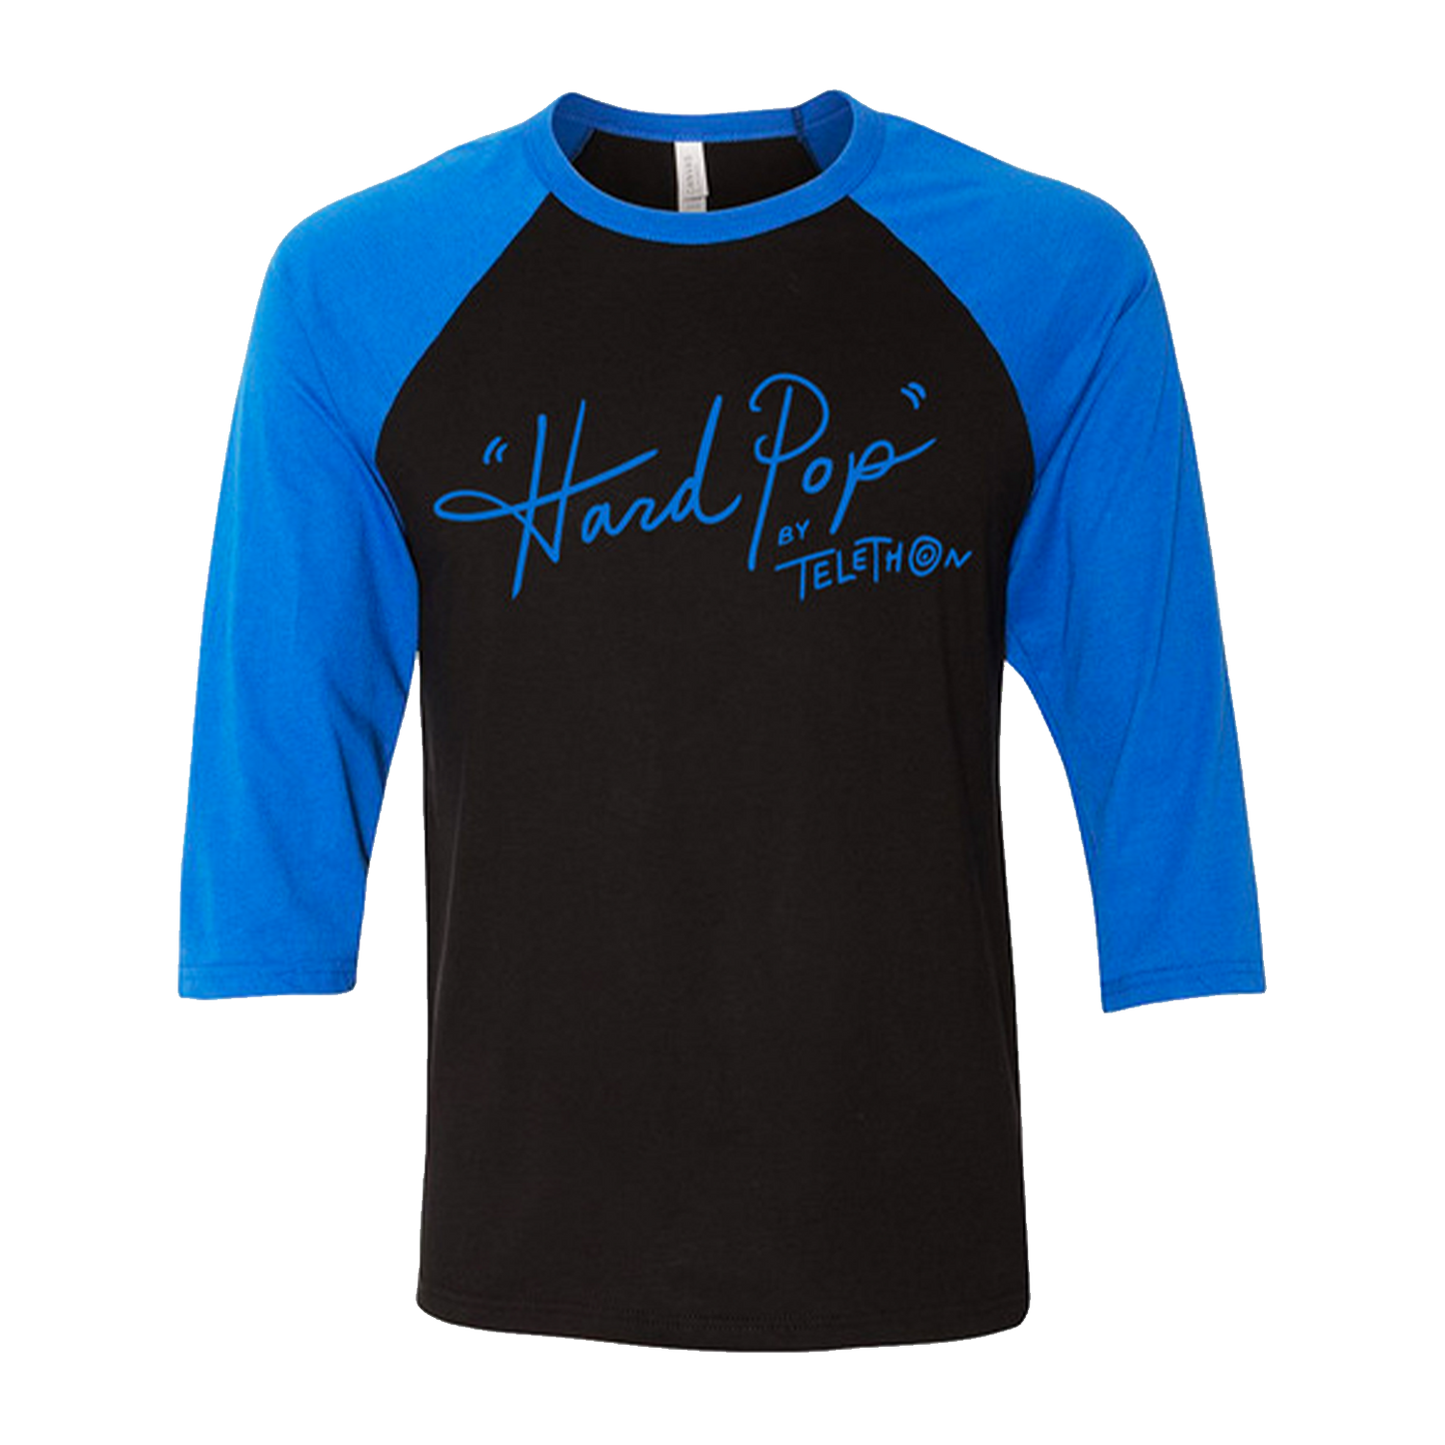 Telethon - "Hard Pop" Baseball Shirt